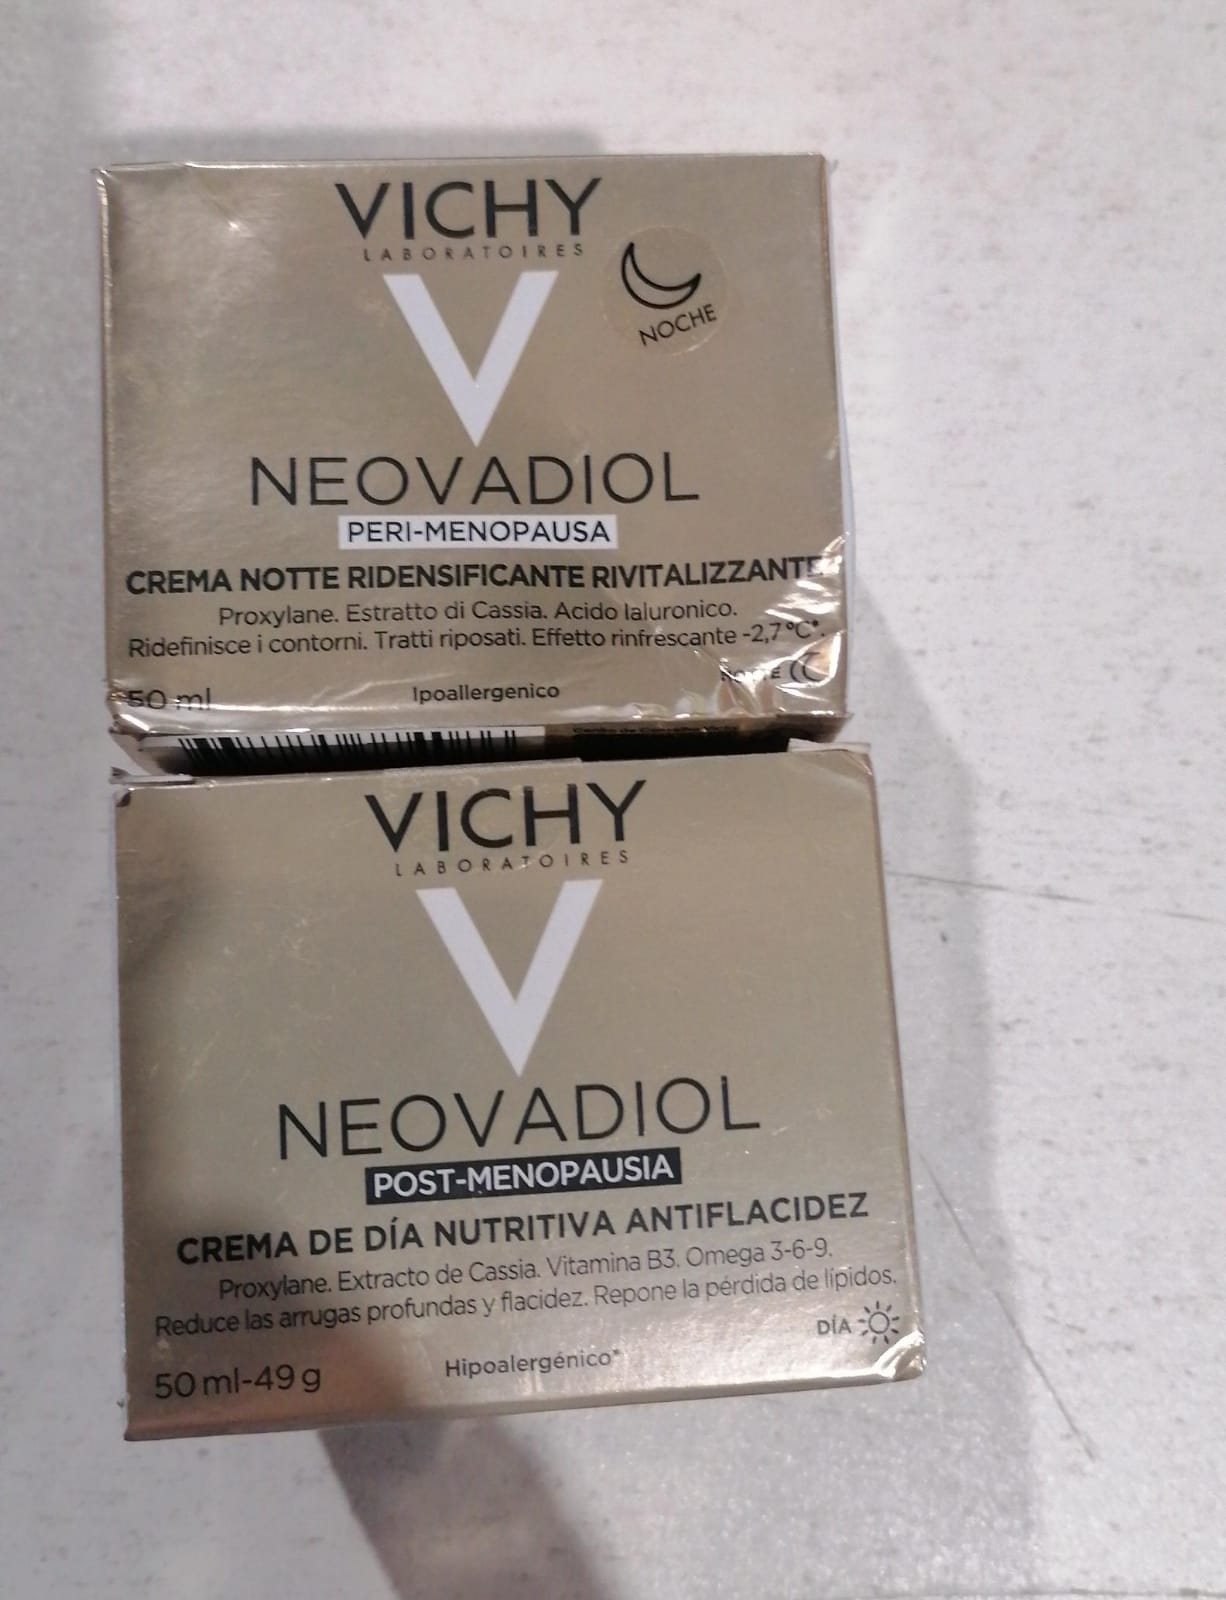 Pack Vichy Neovadiol Peri-Menopausia Noche 50Ml y Crema Antiflacidez Día Neovadiol 50ml [Openbox]